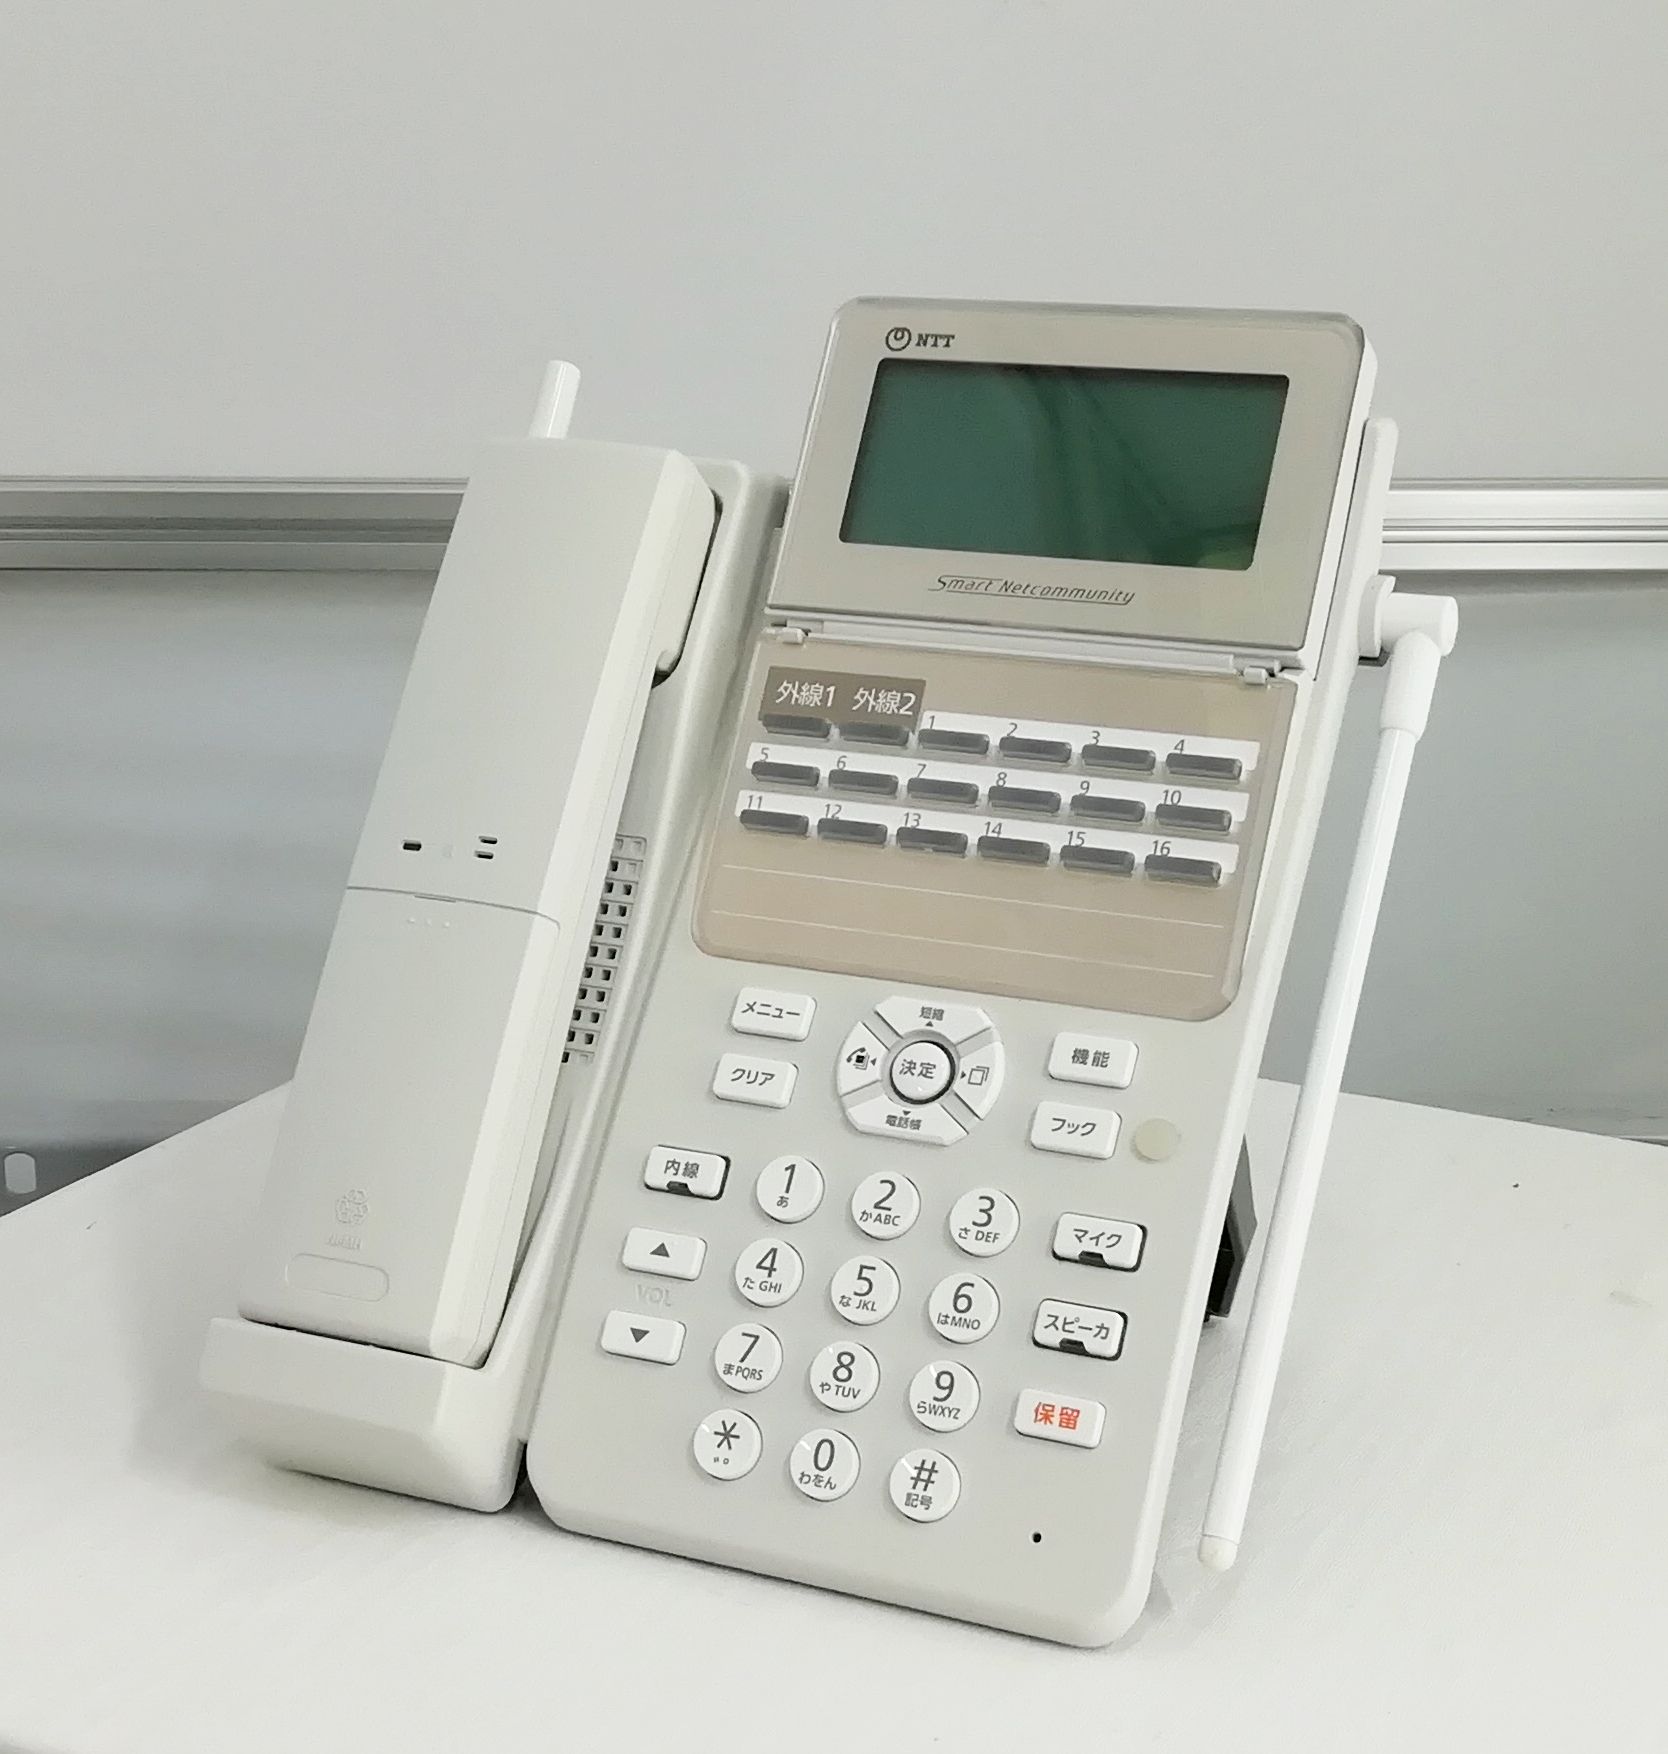 中古 ビジネスフォン NTT スマートネットコミュニティシステムαA1 電話機 A1-18CCLSTEL-(B1)(W) x1台 【送料無料】【30日保証】